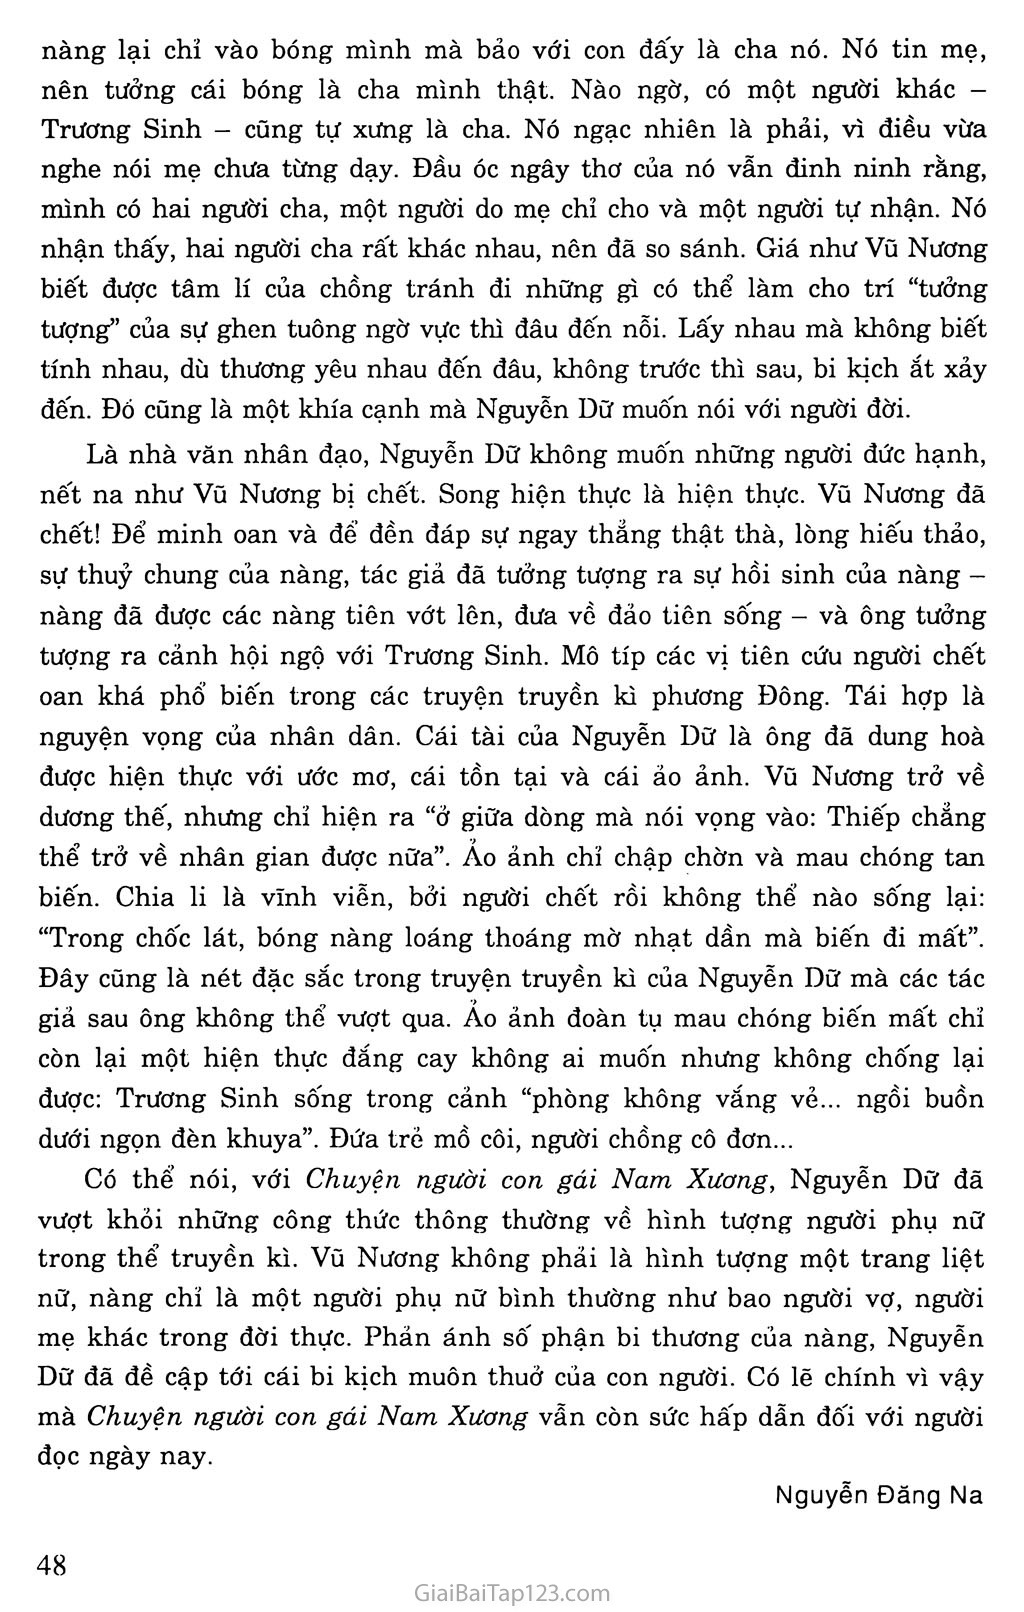 Chuyện người con gái Nam Xương (trích Truyền kì mạn lục) trang 7